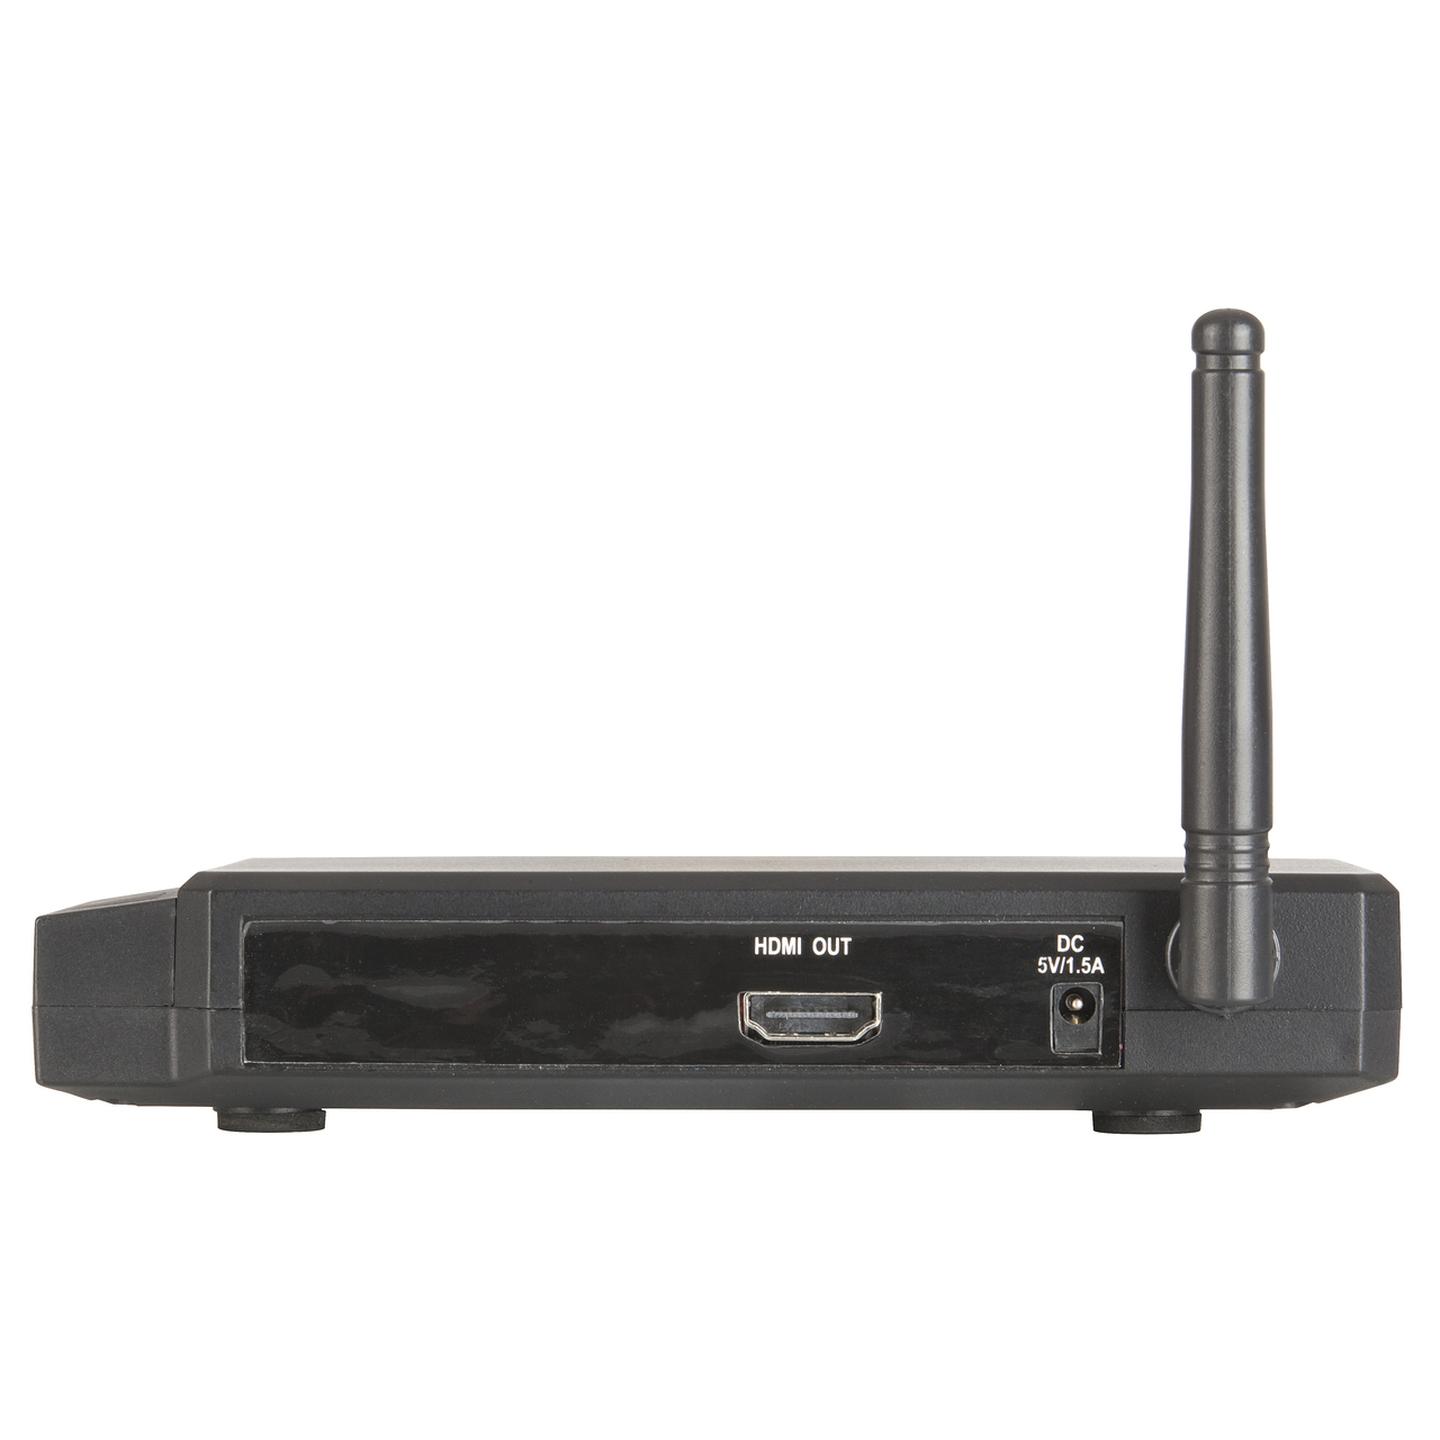 Digital 2.4GHz HDMI AV Sender/Receiver